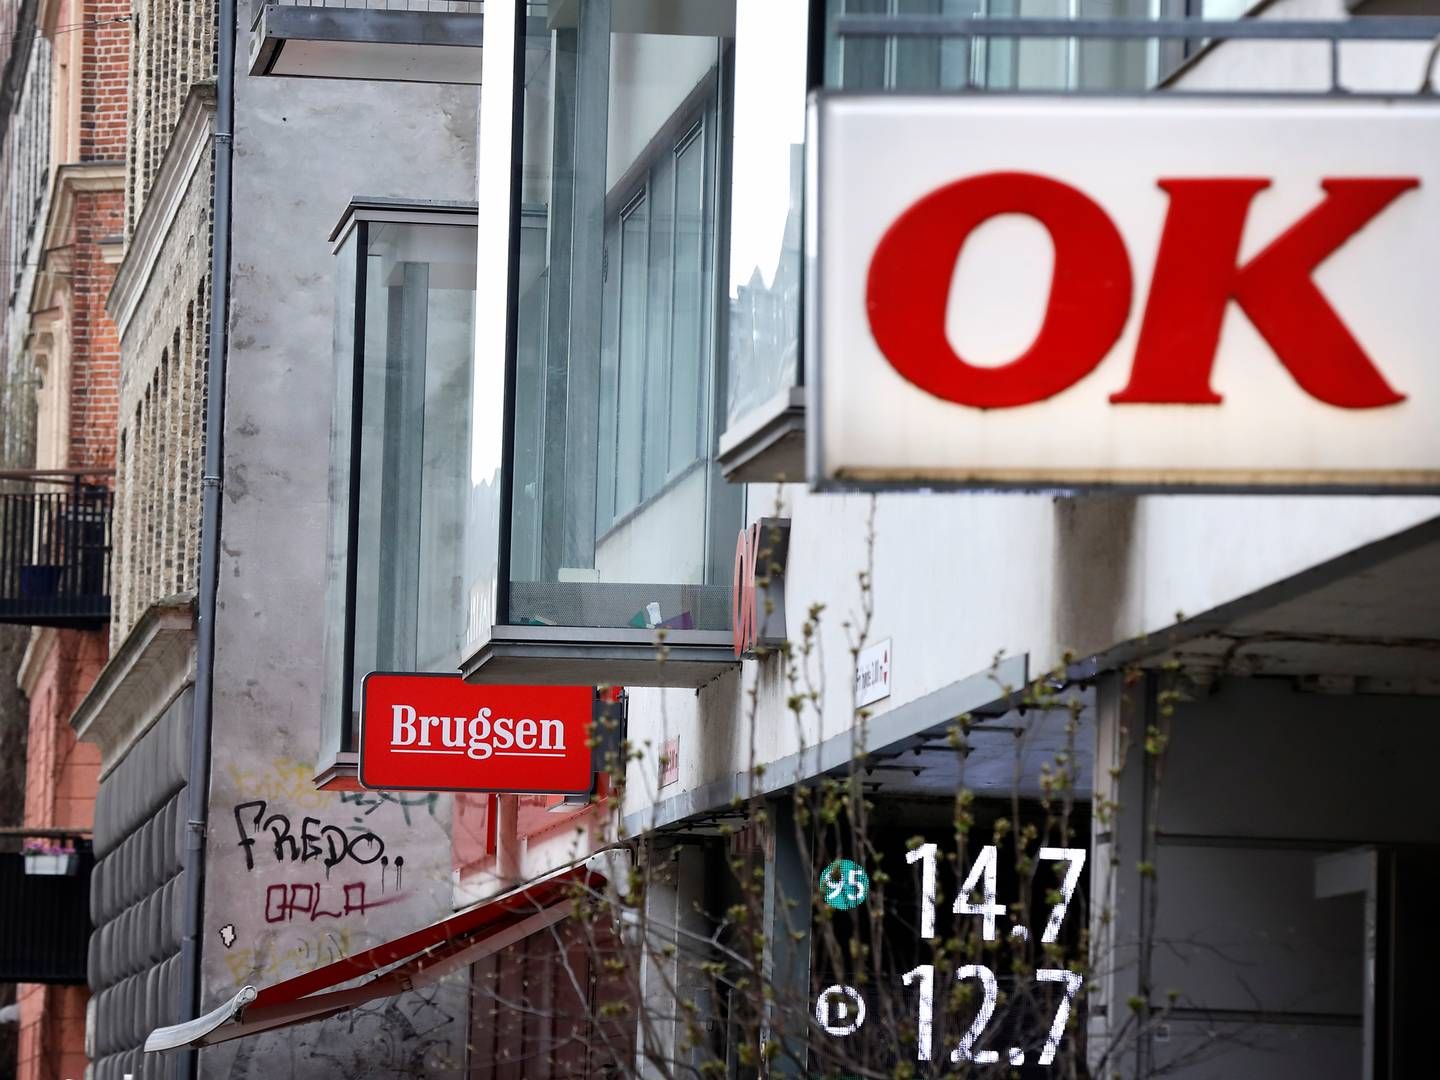 OK har opkøbt halvdelen af aktierne i Coop Danmark. Den anden halvdel ejes stadig af moderselskabet Coop Amba. OK får dog bestemmende indflydelse med 2/3 af stemmerettighederne i Coop Danmark. | Foto: Jens Dresling